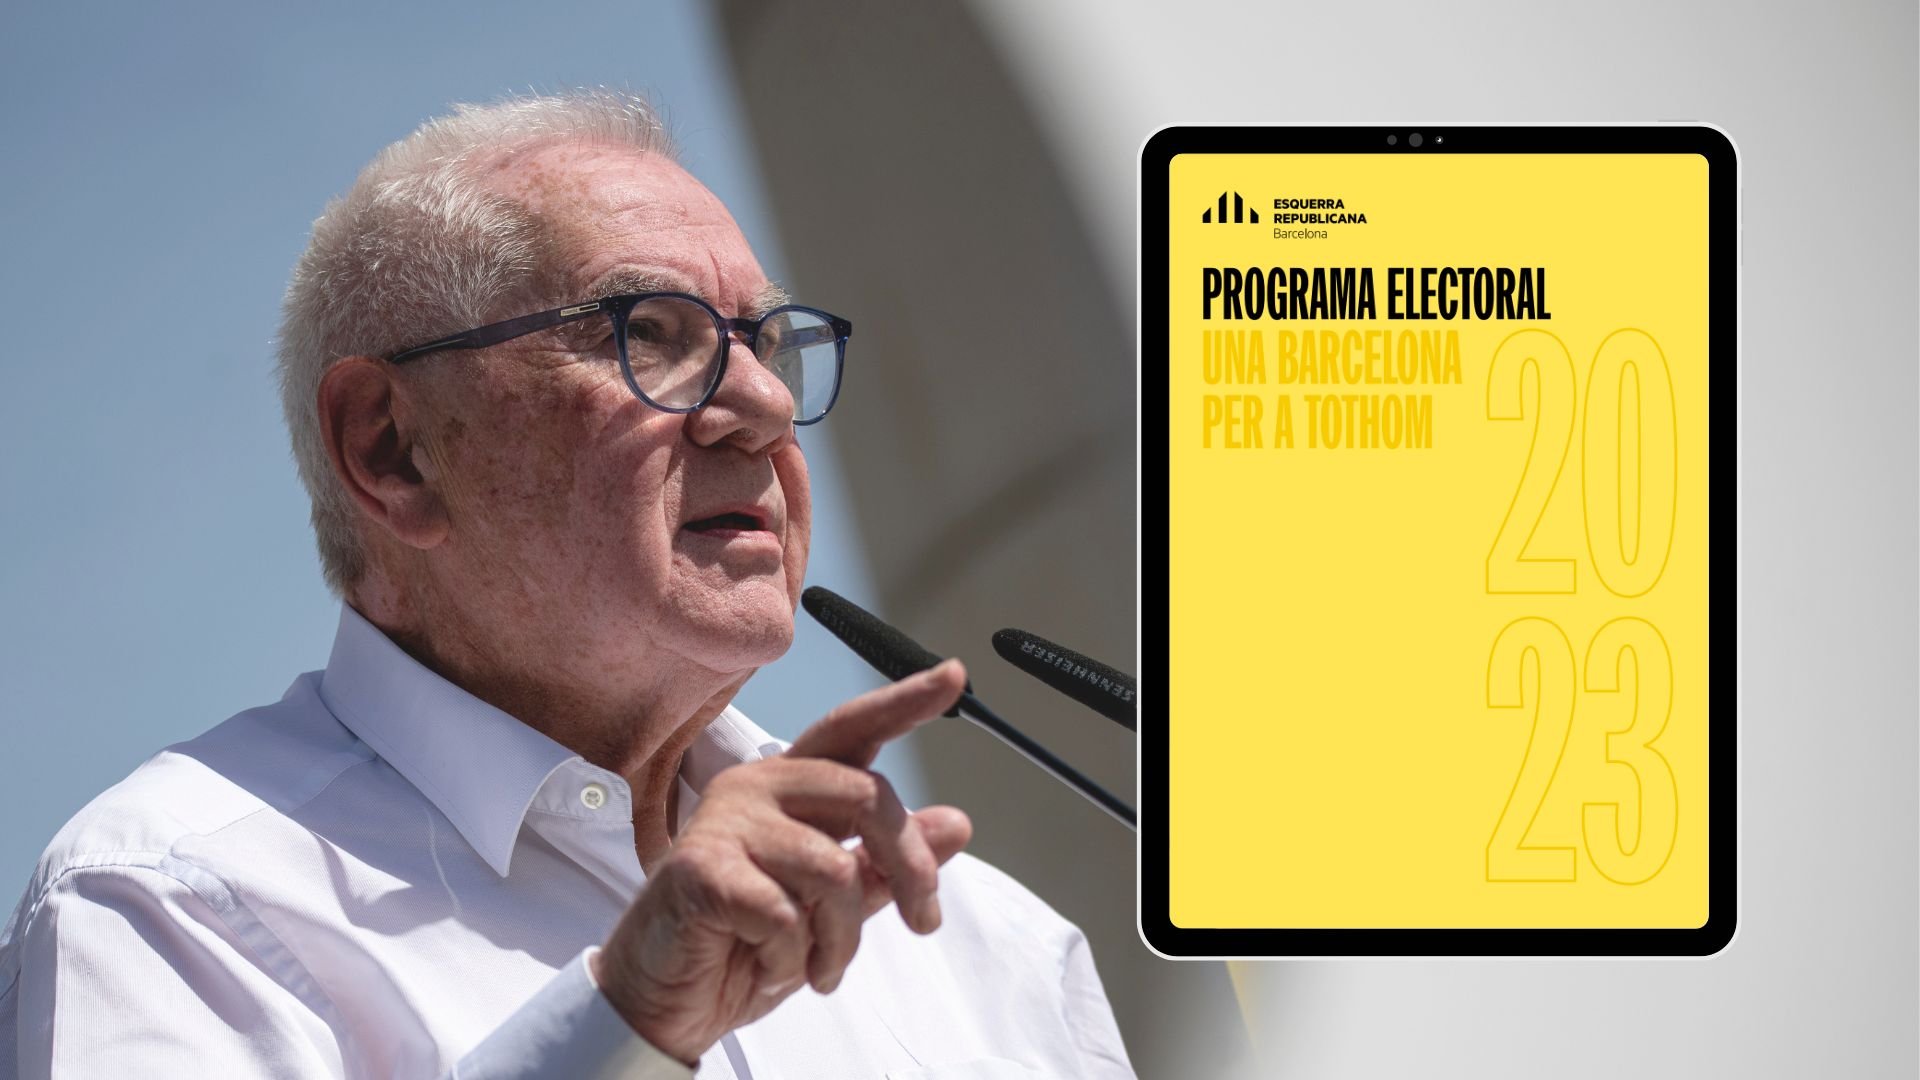 Programa electoral d'ERC a Barcelona: Què proposa Ernest Maragall?